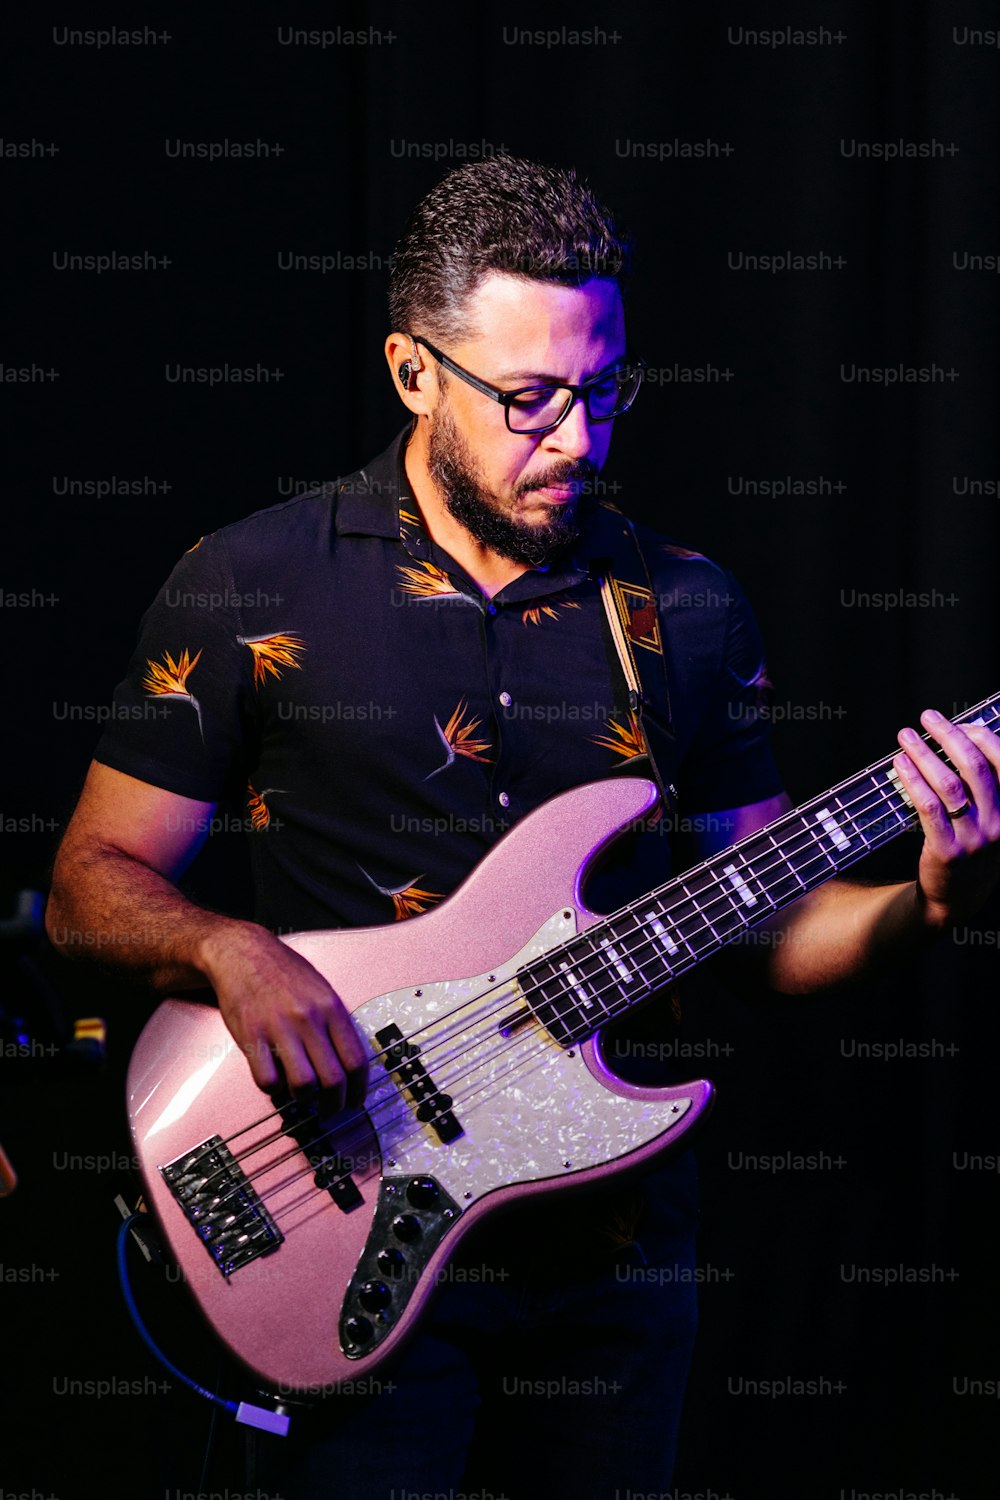 Ein Mann mit Brille, der eine rosa Gitarre spielt